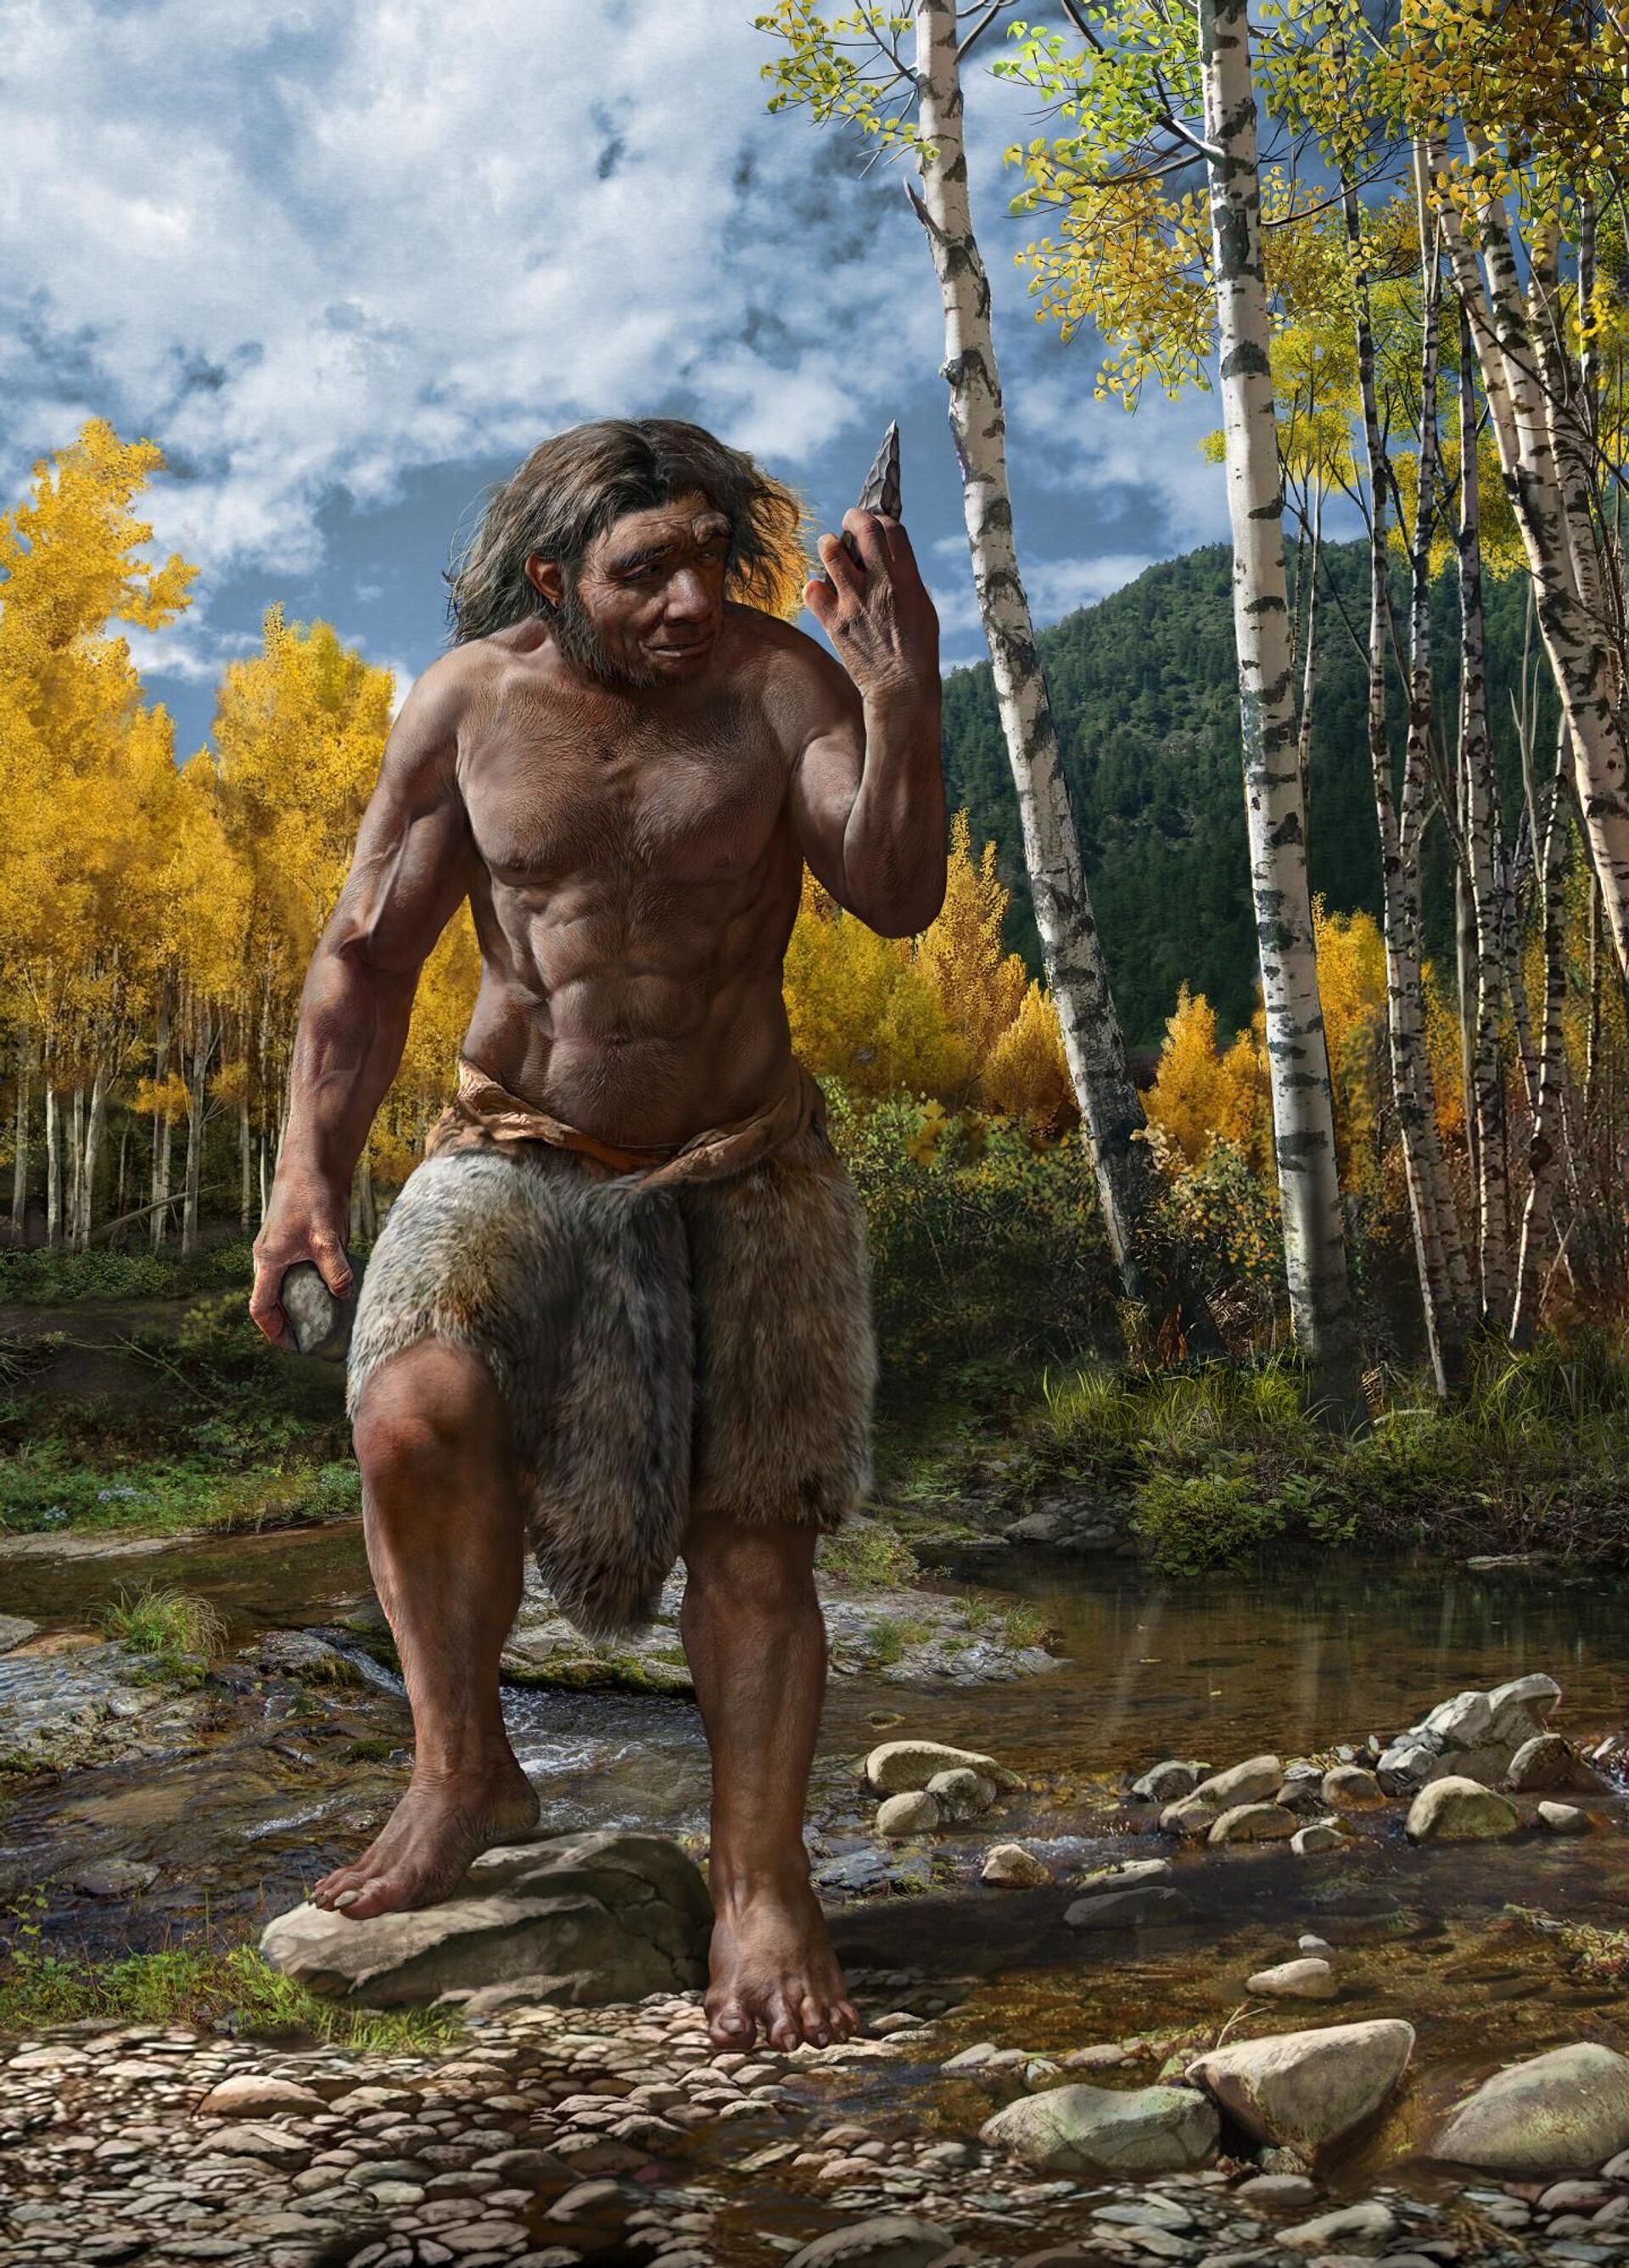 'Homem Dragão' pode ser nosso parente mais próximo e não neandertais, dizem cientistas (FOTOS) - Sputnik Brasil, 1920, 25.06.2021